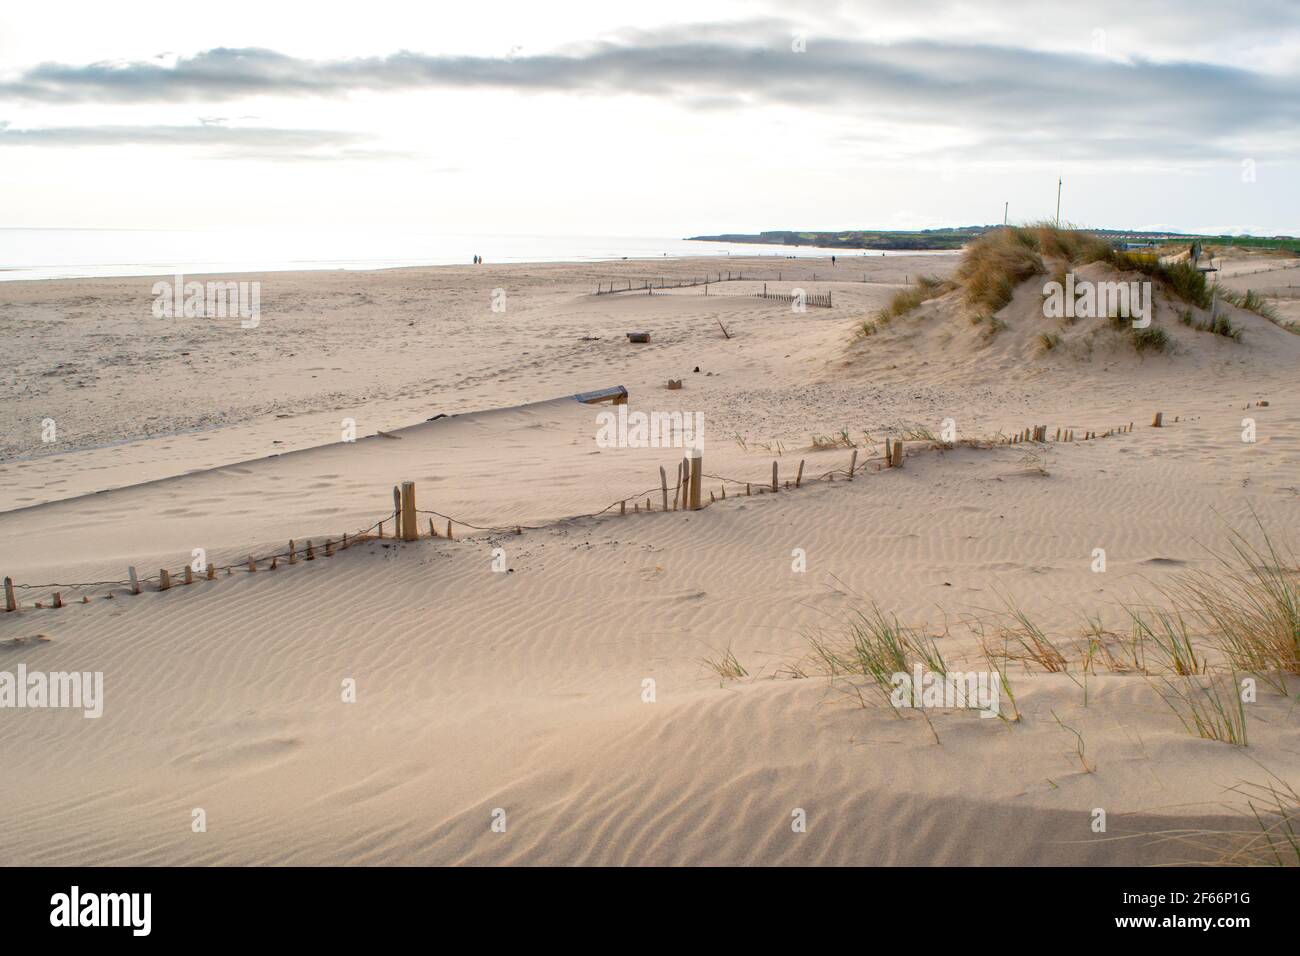 Die sandige Küste am South Shields Beach, einer Küstenstadt in der Nähe von Newcastle upon Tyne im Nordosten Englands. Stockfoto